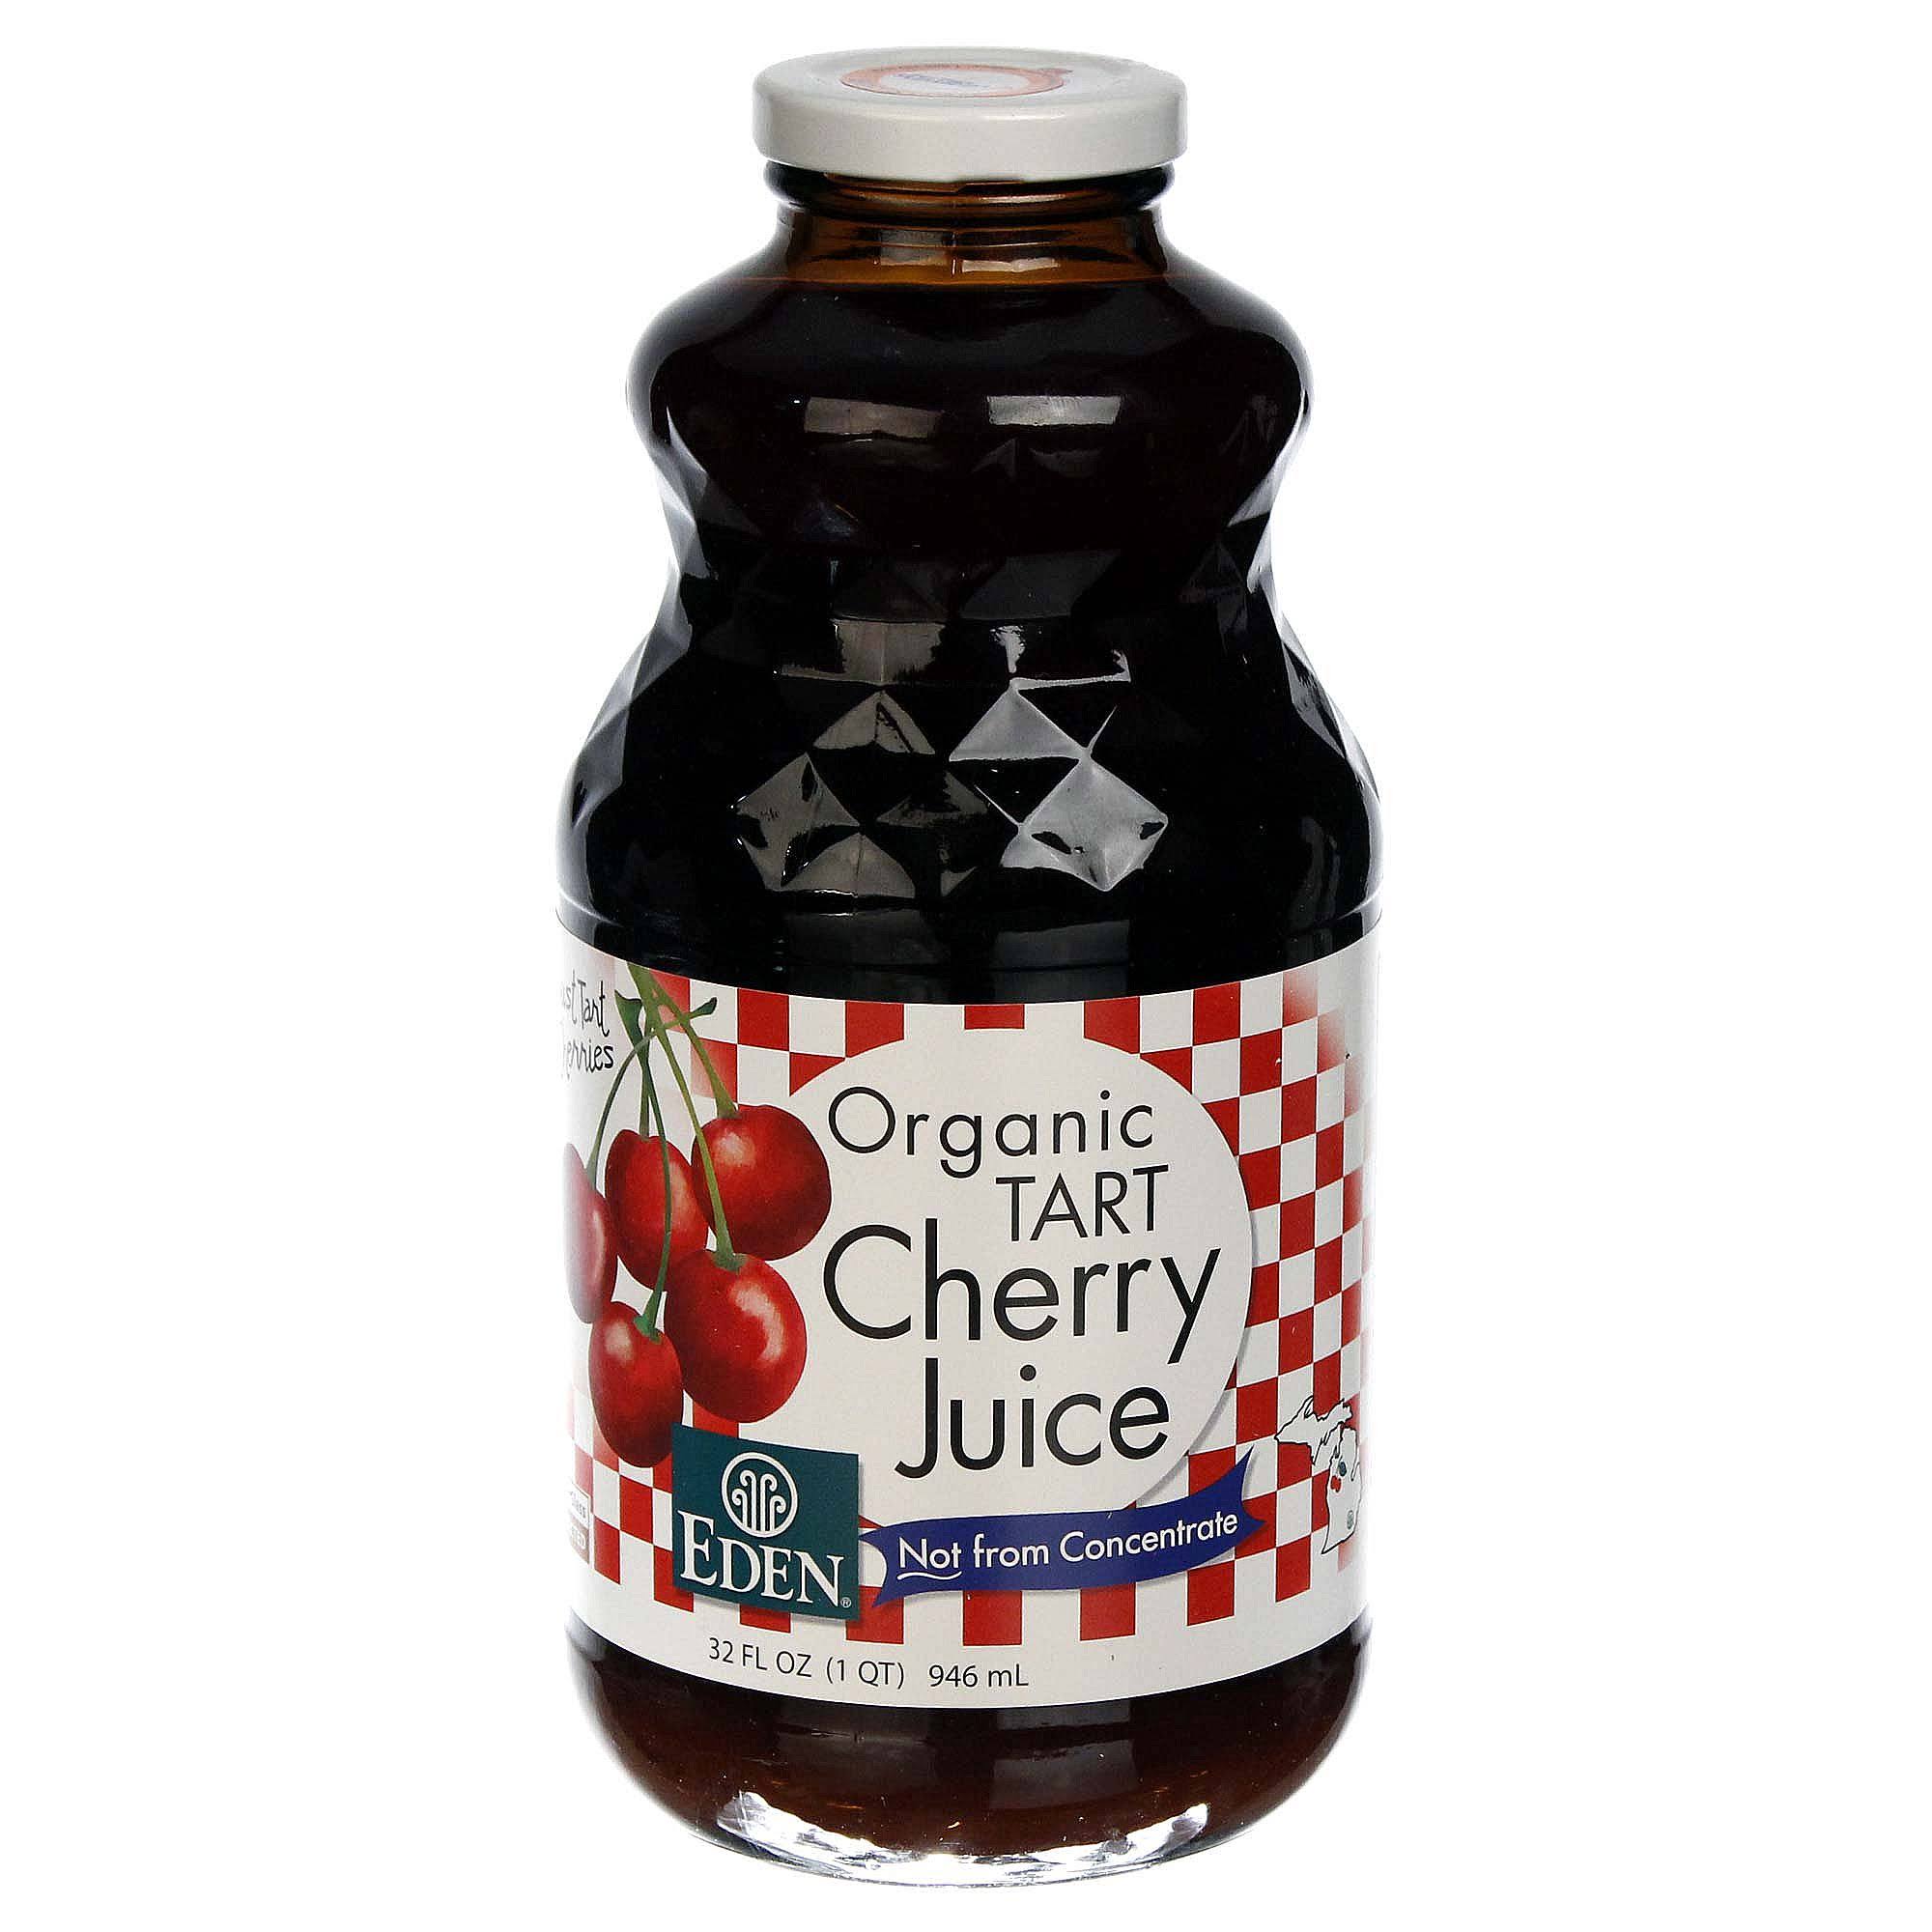 Eden Foods Organic Tart Cherry Juice - 32oz